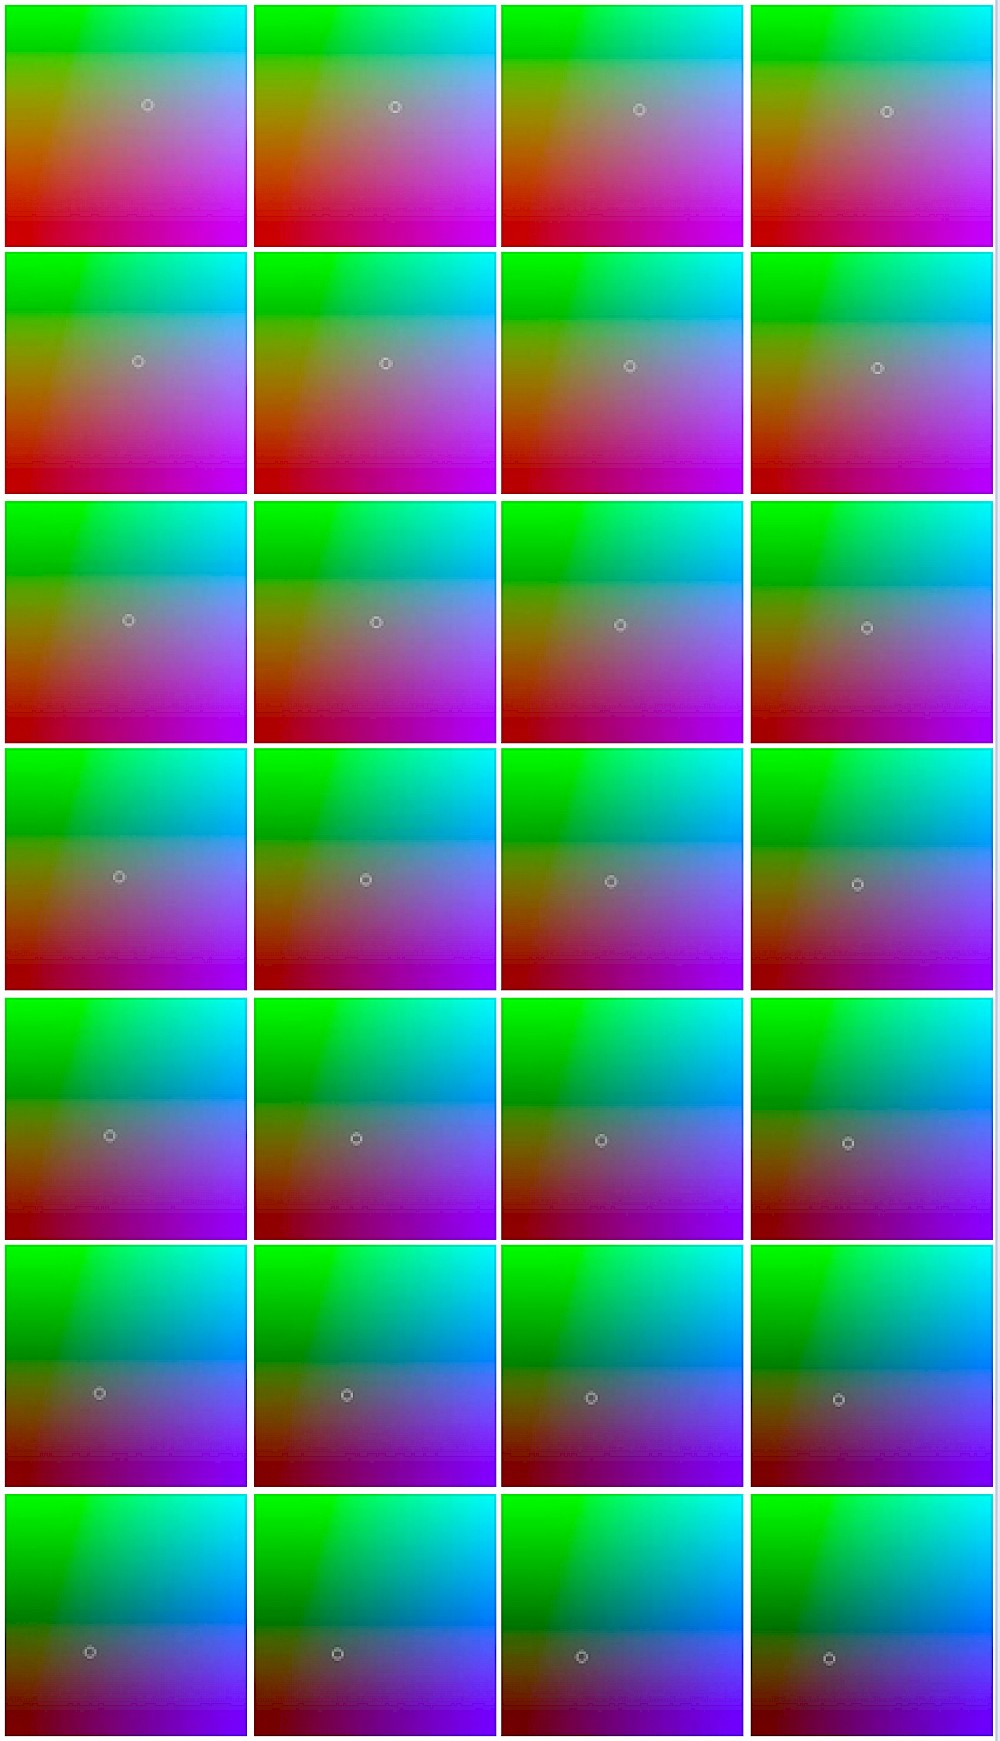 Imagen de difusión (frames de un video exhibido llamado "Las lunas de Bitmap")